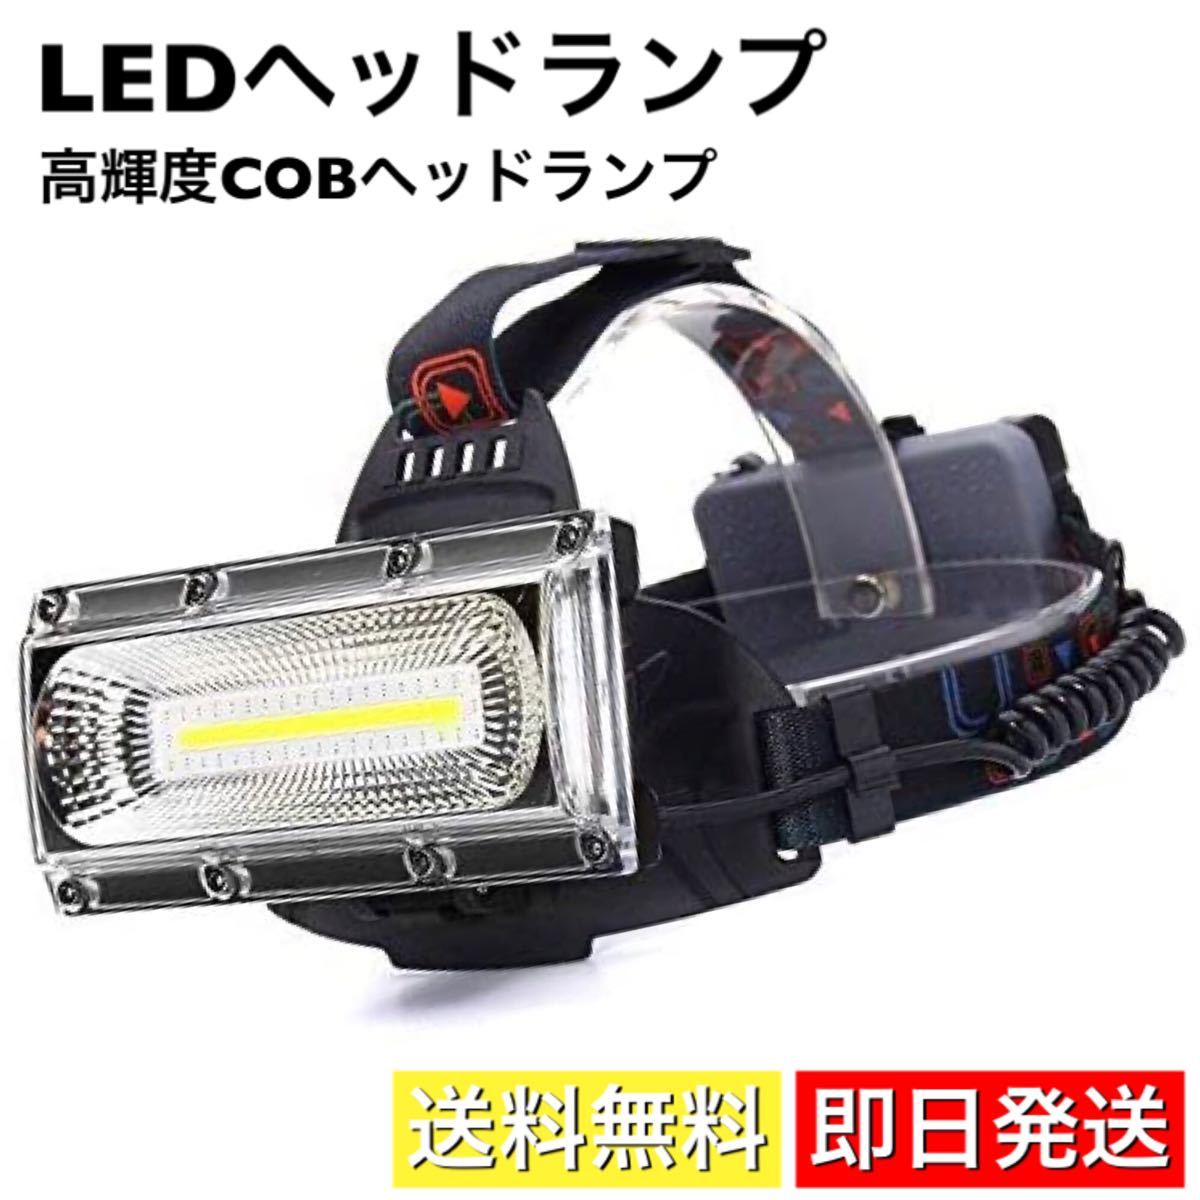 ヘッドライト ヘッドランプ USB充電式 LED COBライト 高輝度 作業灯 ワークライト 投光器 リチウムイオン電池付 ライト